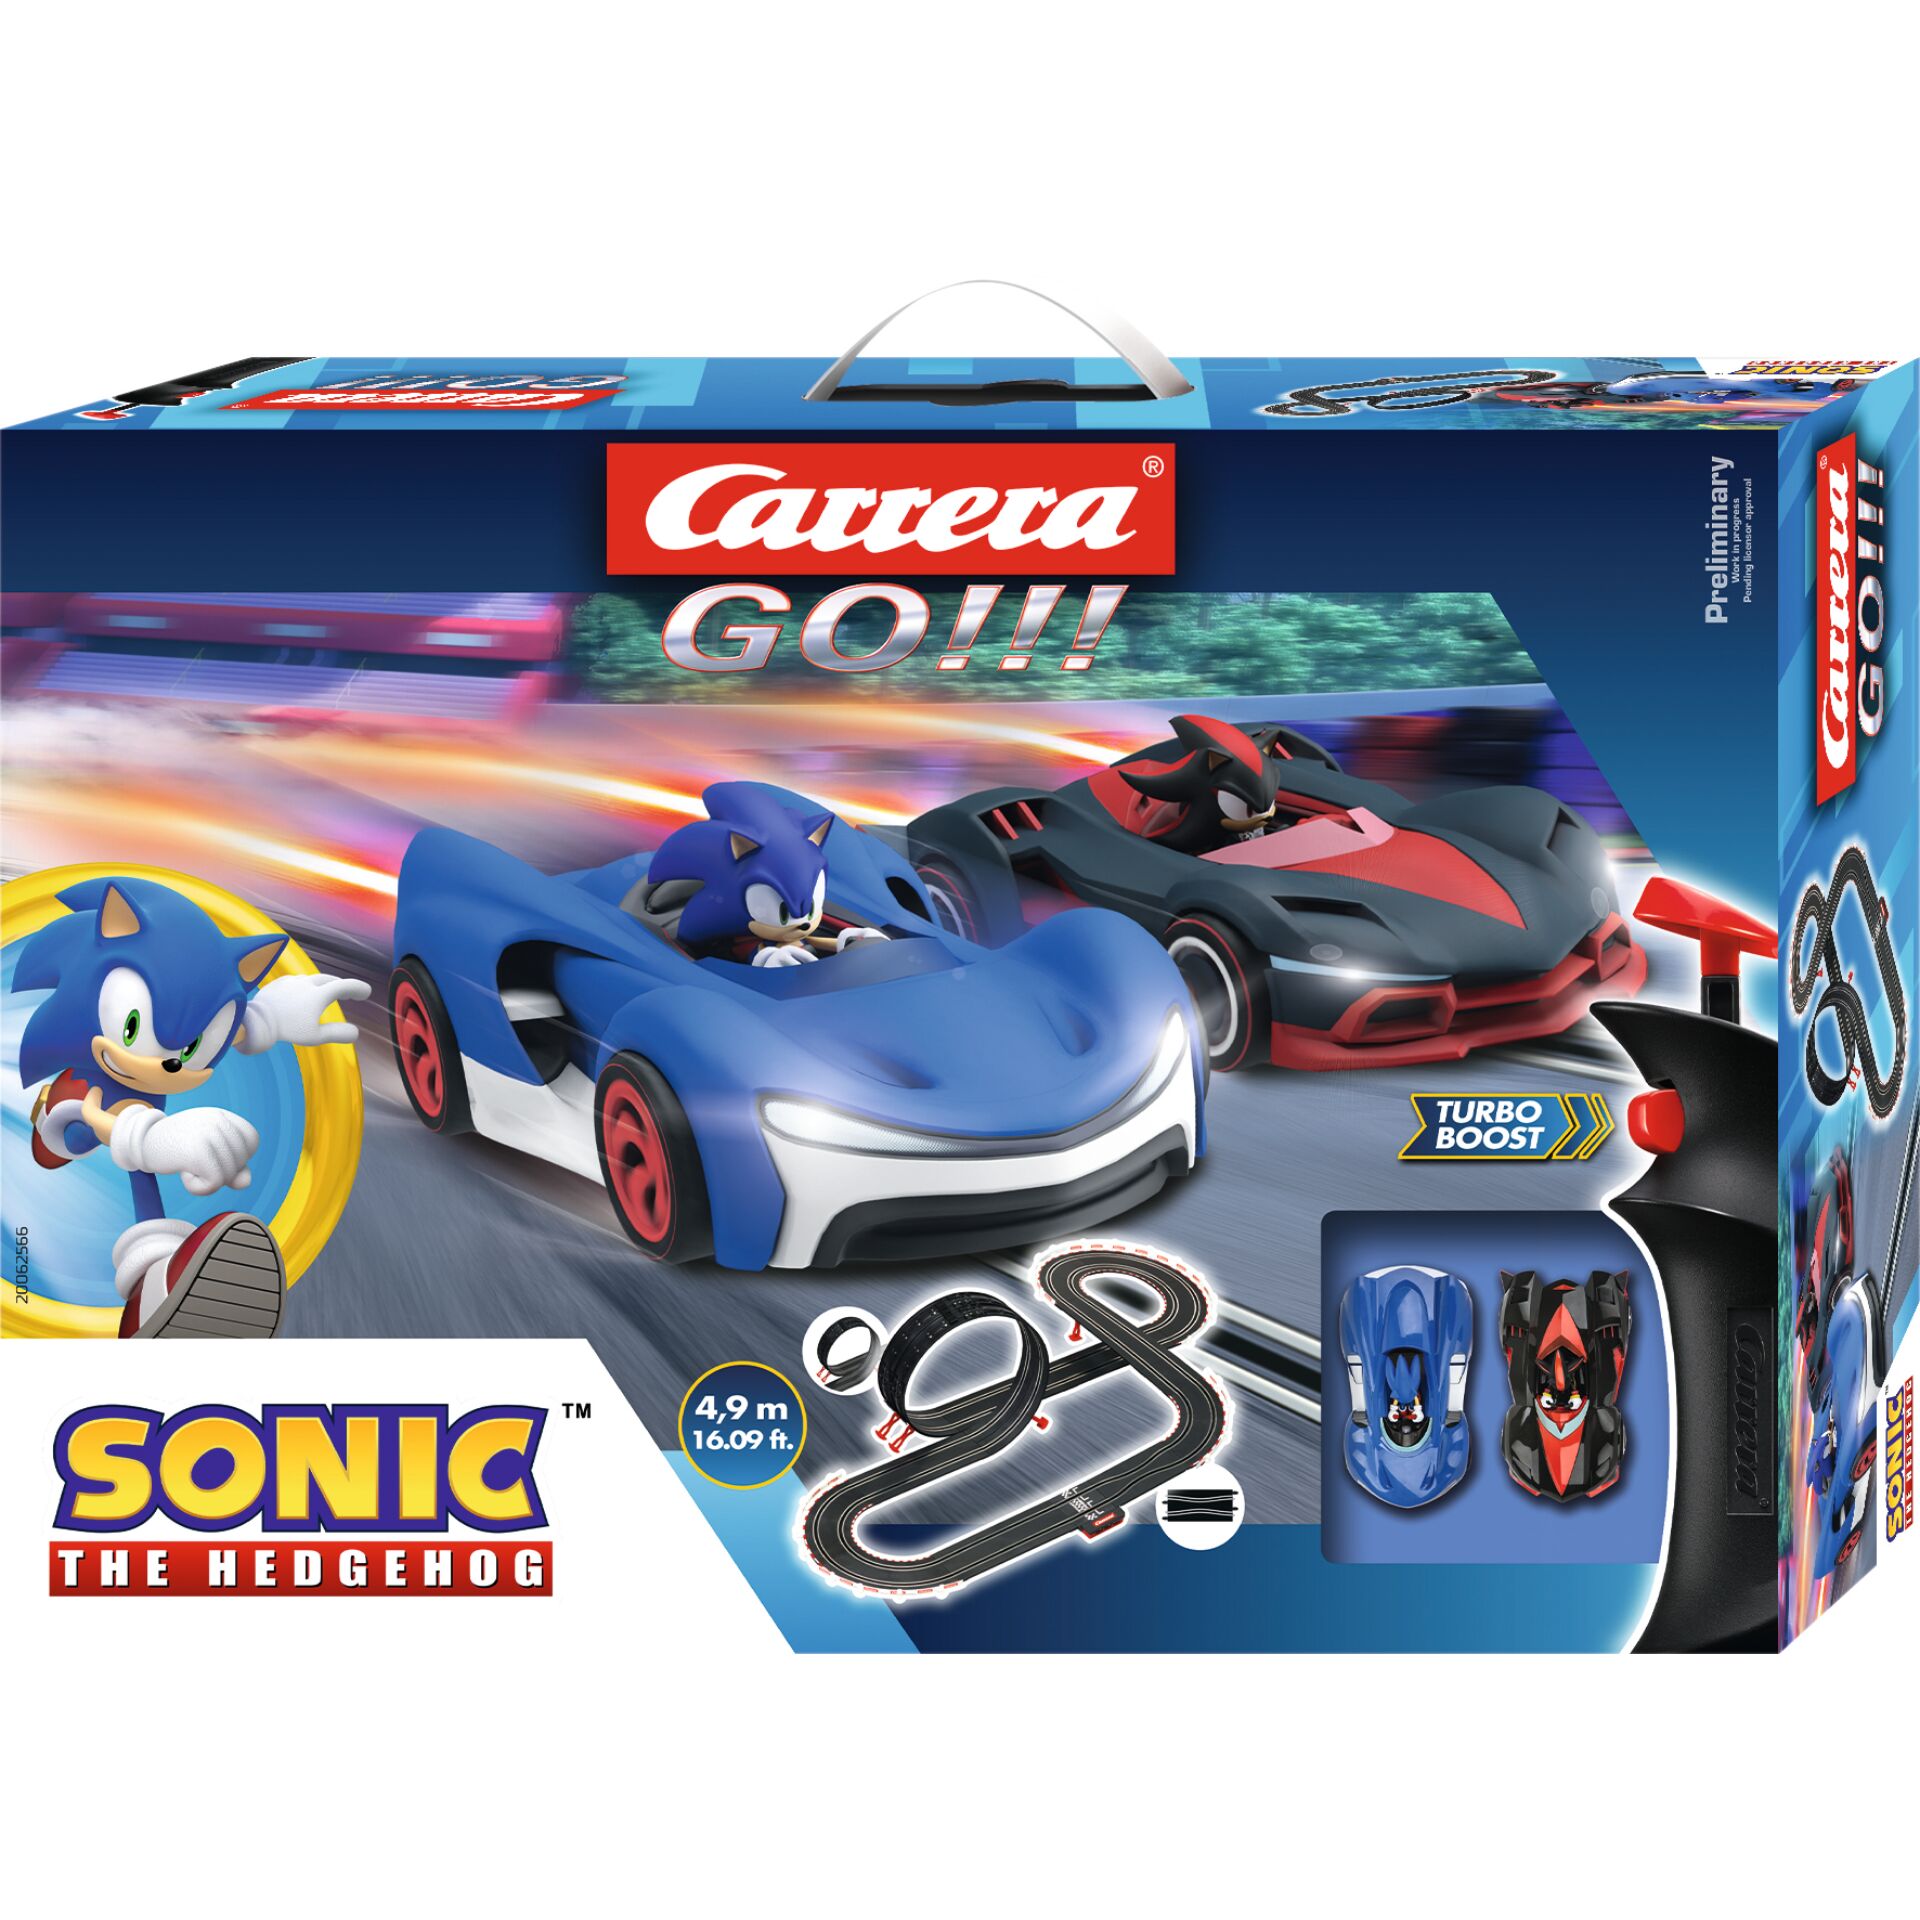 Carrera GO!!! Set - Sonic the Hedgehog